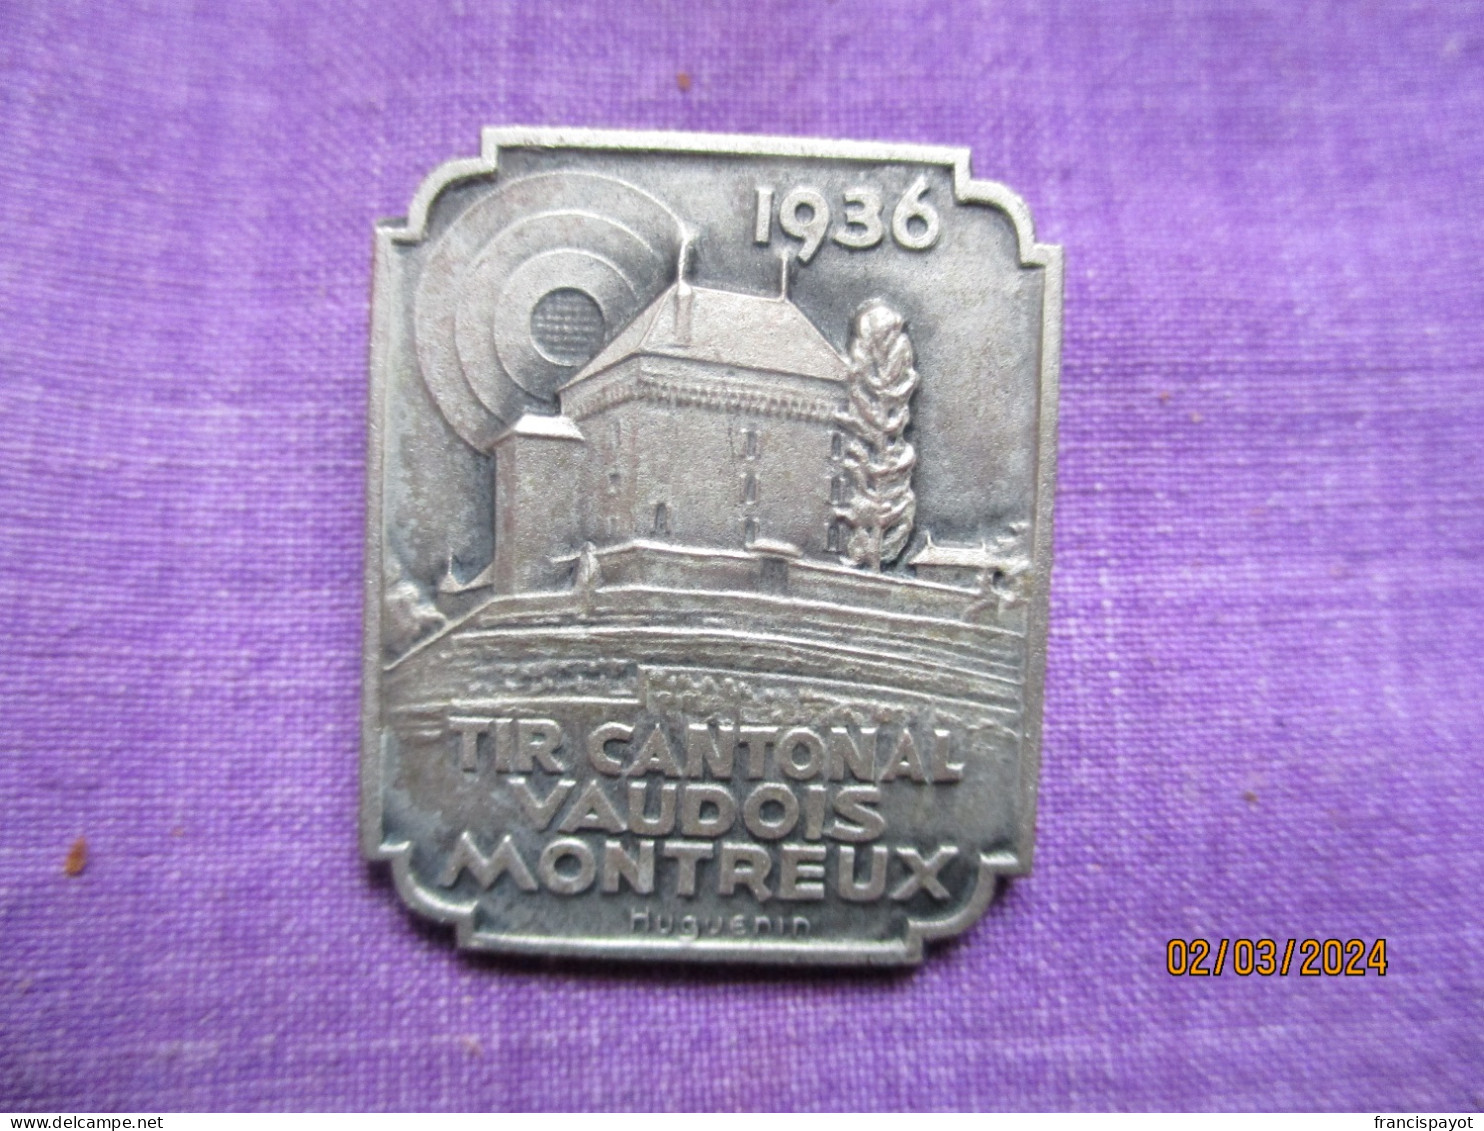 Suisse: épinglette Tir Cantonal Vaudois Montreux 1931 - Professionals / Firms